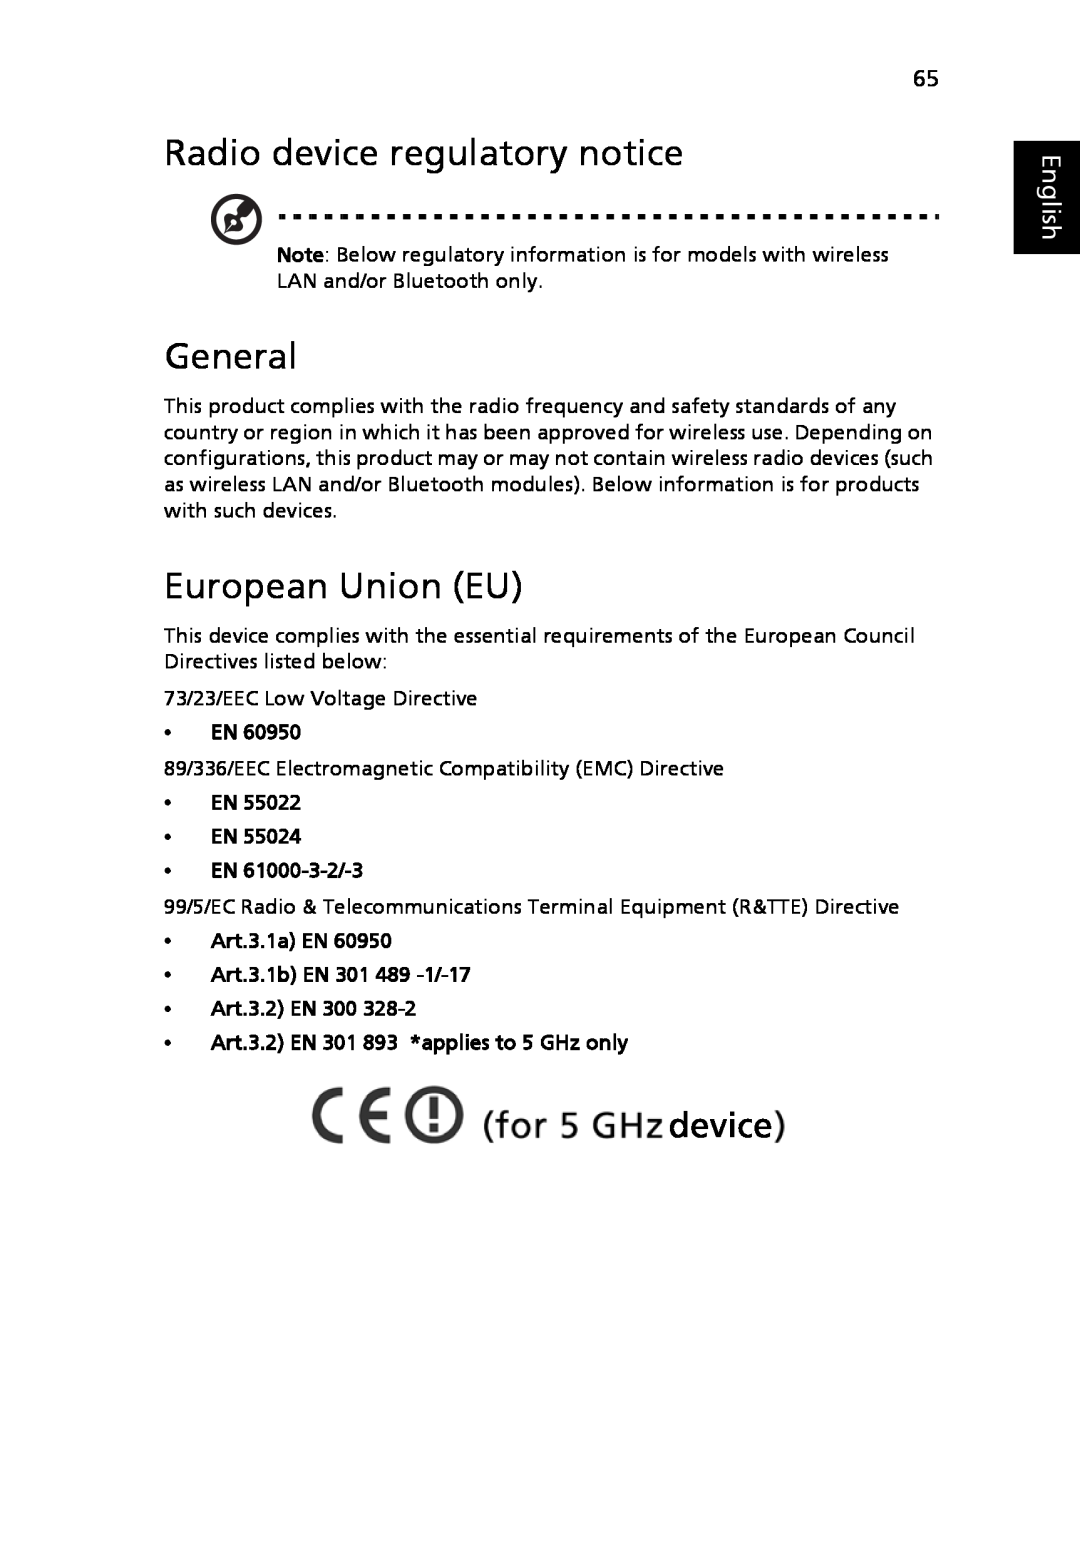 Acer 3630 manual Radio device regulatory notice, General, European Union EU, English, EN EN EN 61000-3-2/-3 